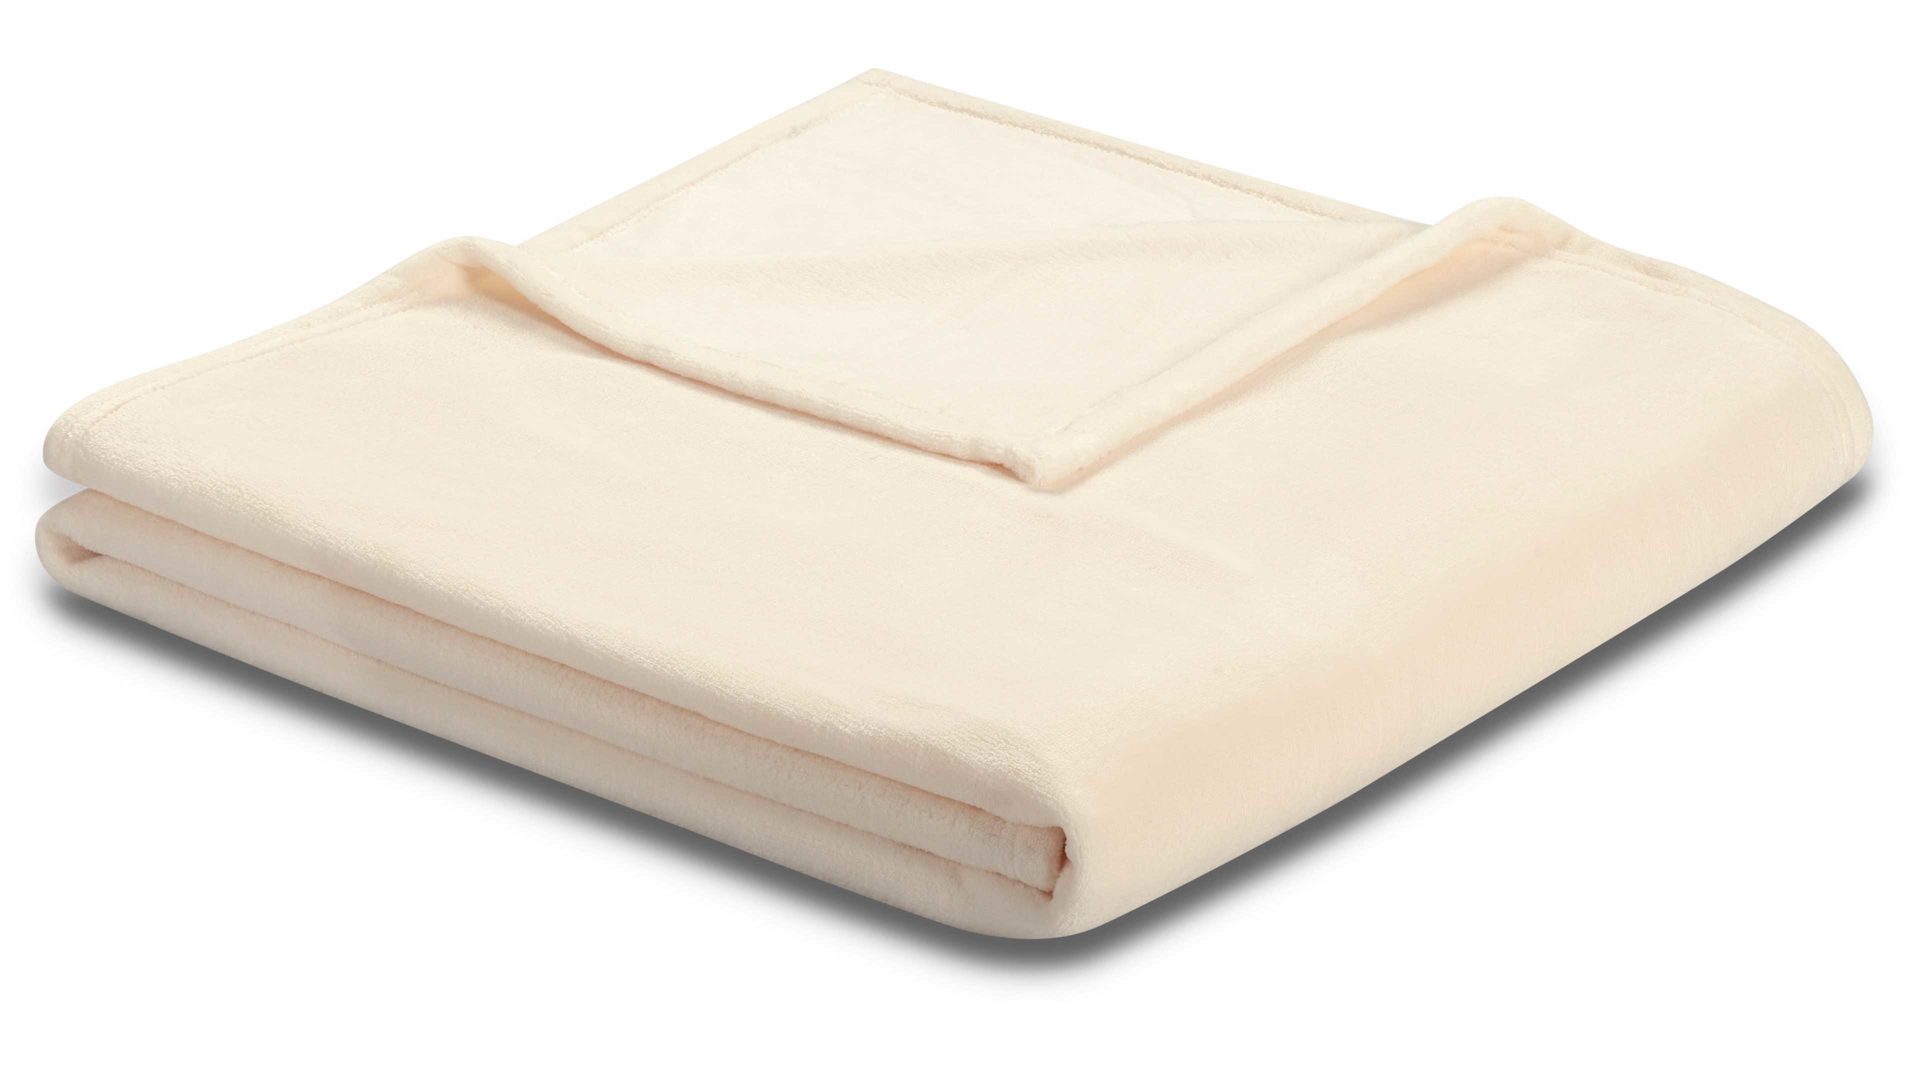 Wohndecke Biederlack aus Kunstfaser in Weiß biederlack Wohndecke soft & cover Creme – ca. 150 x 200 cm